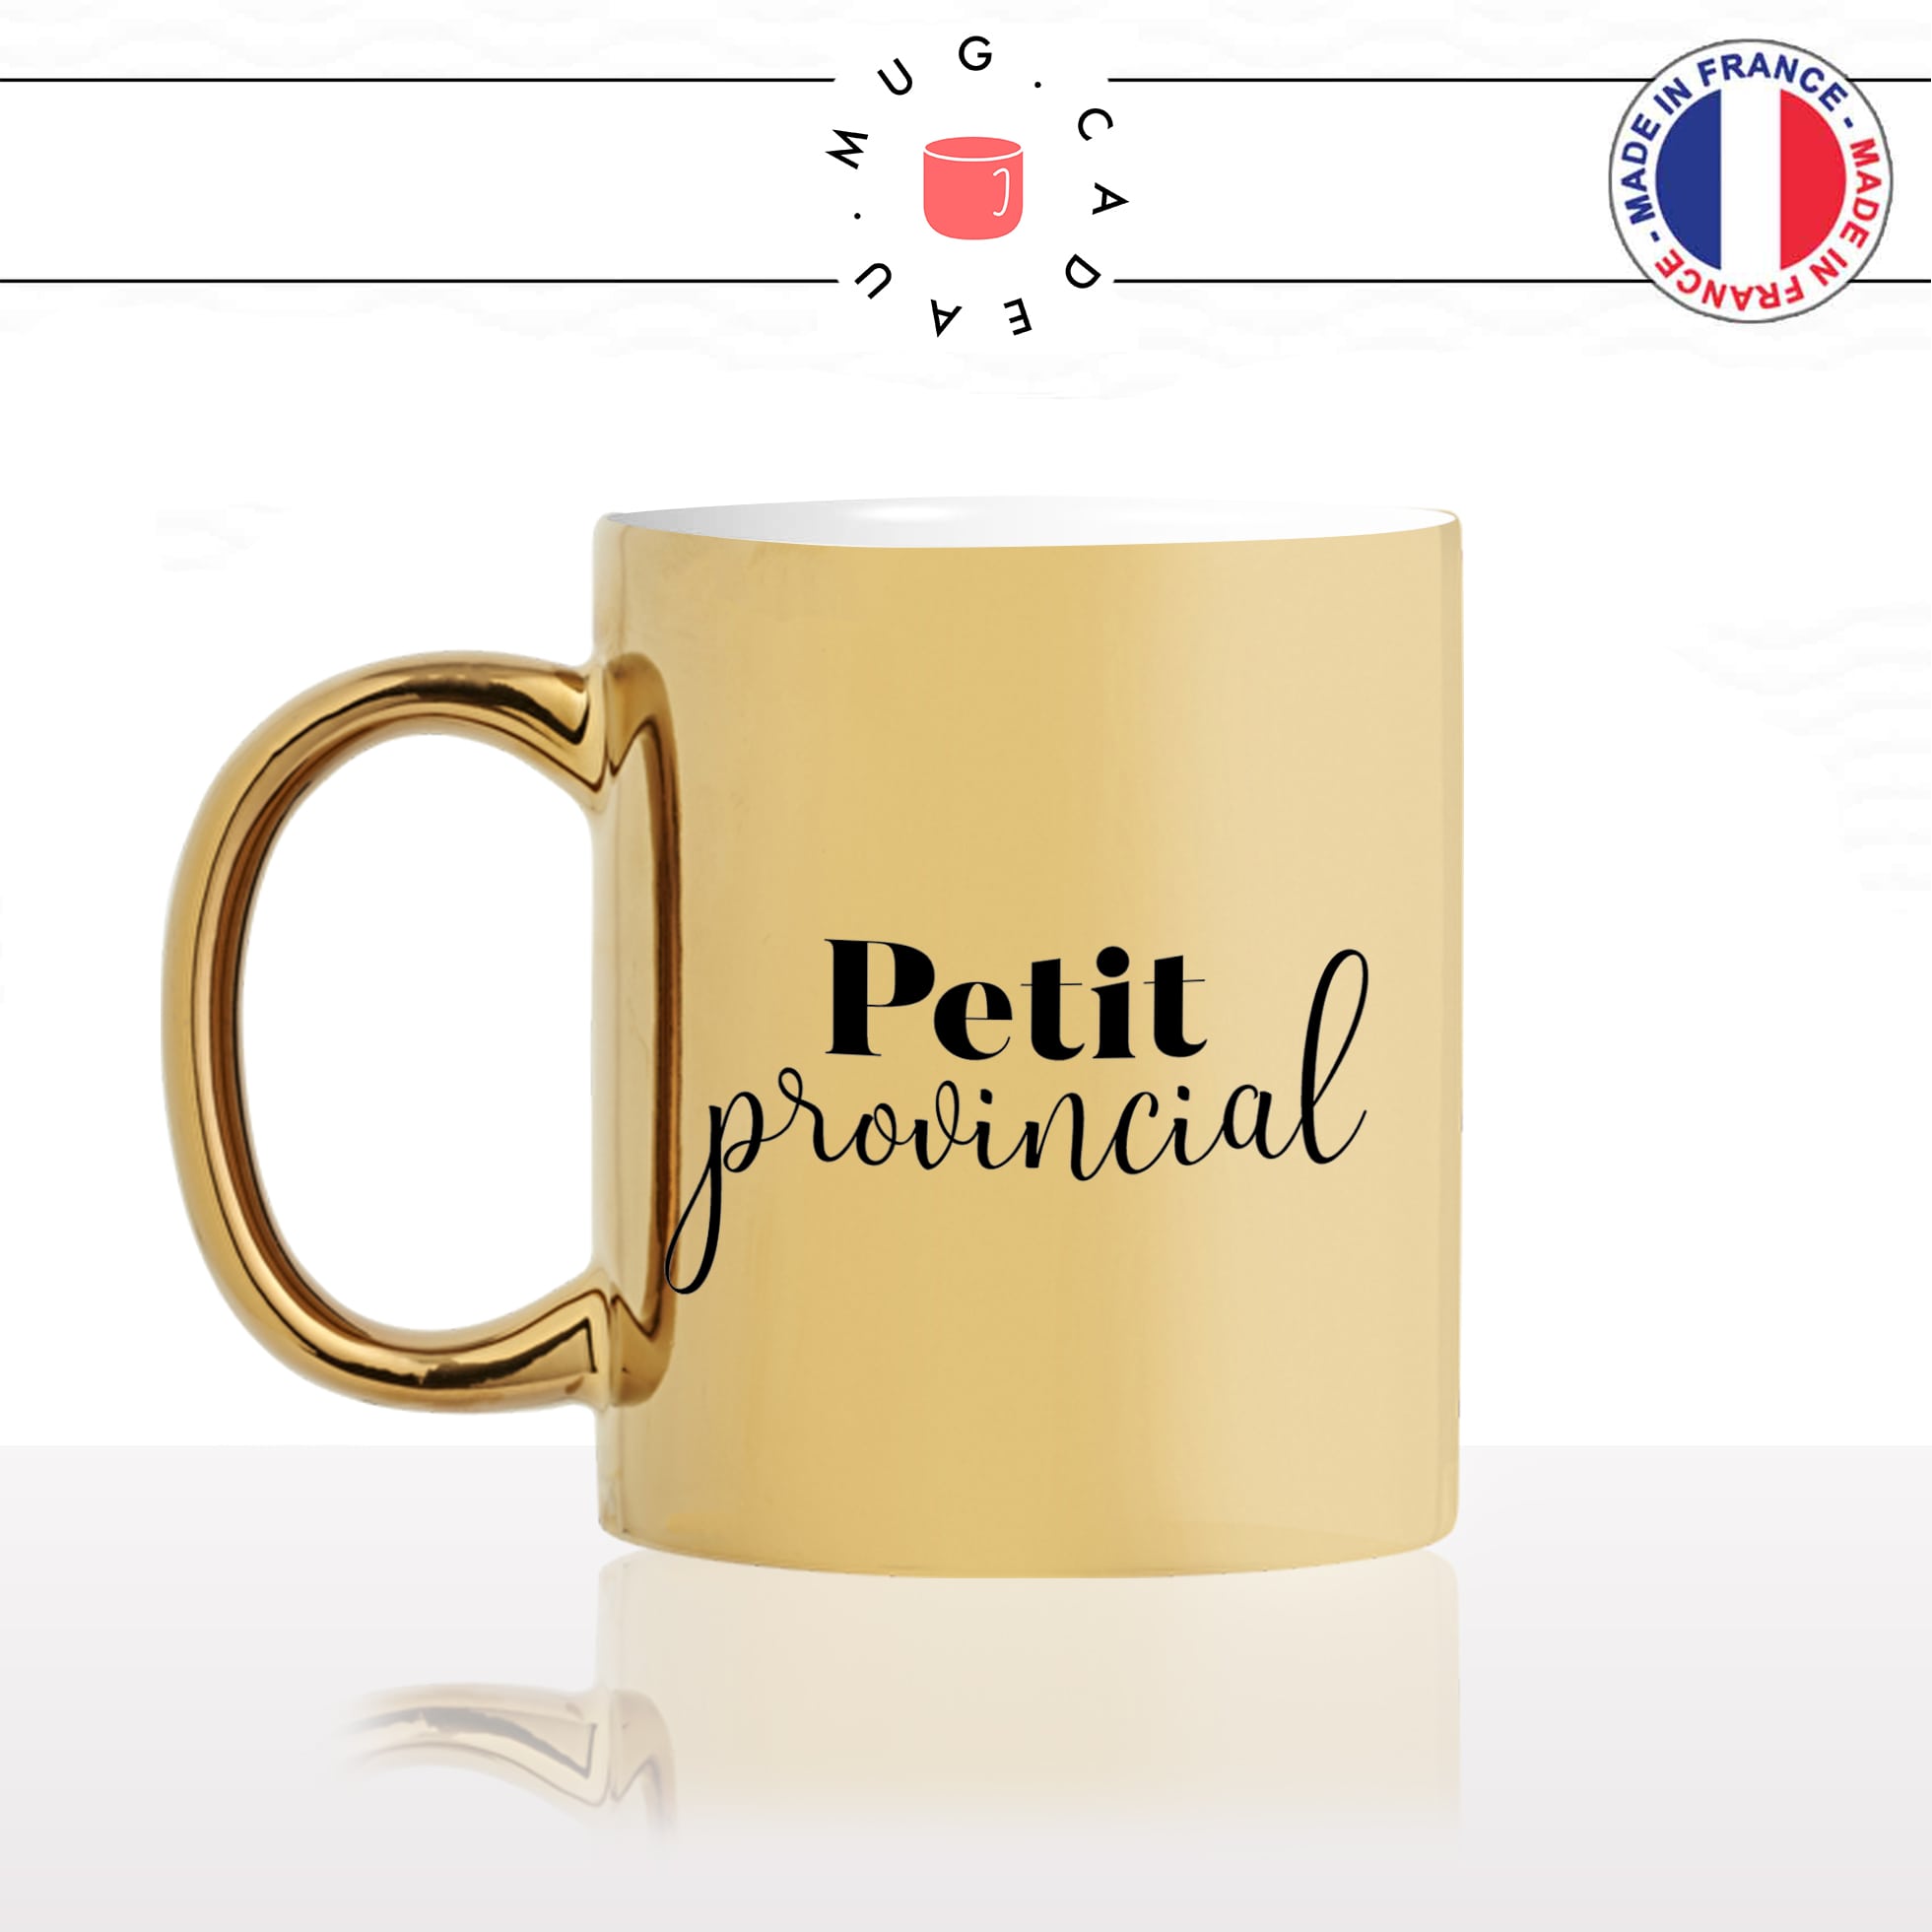 mug-tasse-doré-or-gold-petit-provincial-campagne-ville-paris-travail-collegue-ami-colloc-cool-humour-fun-idée-cadeau-personnalisé-café-thé-min